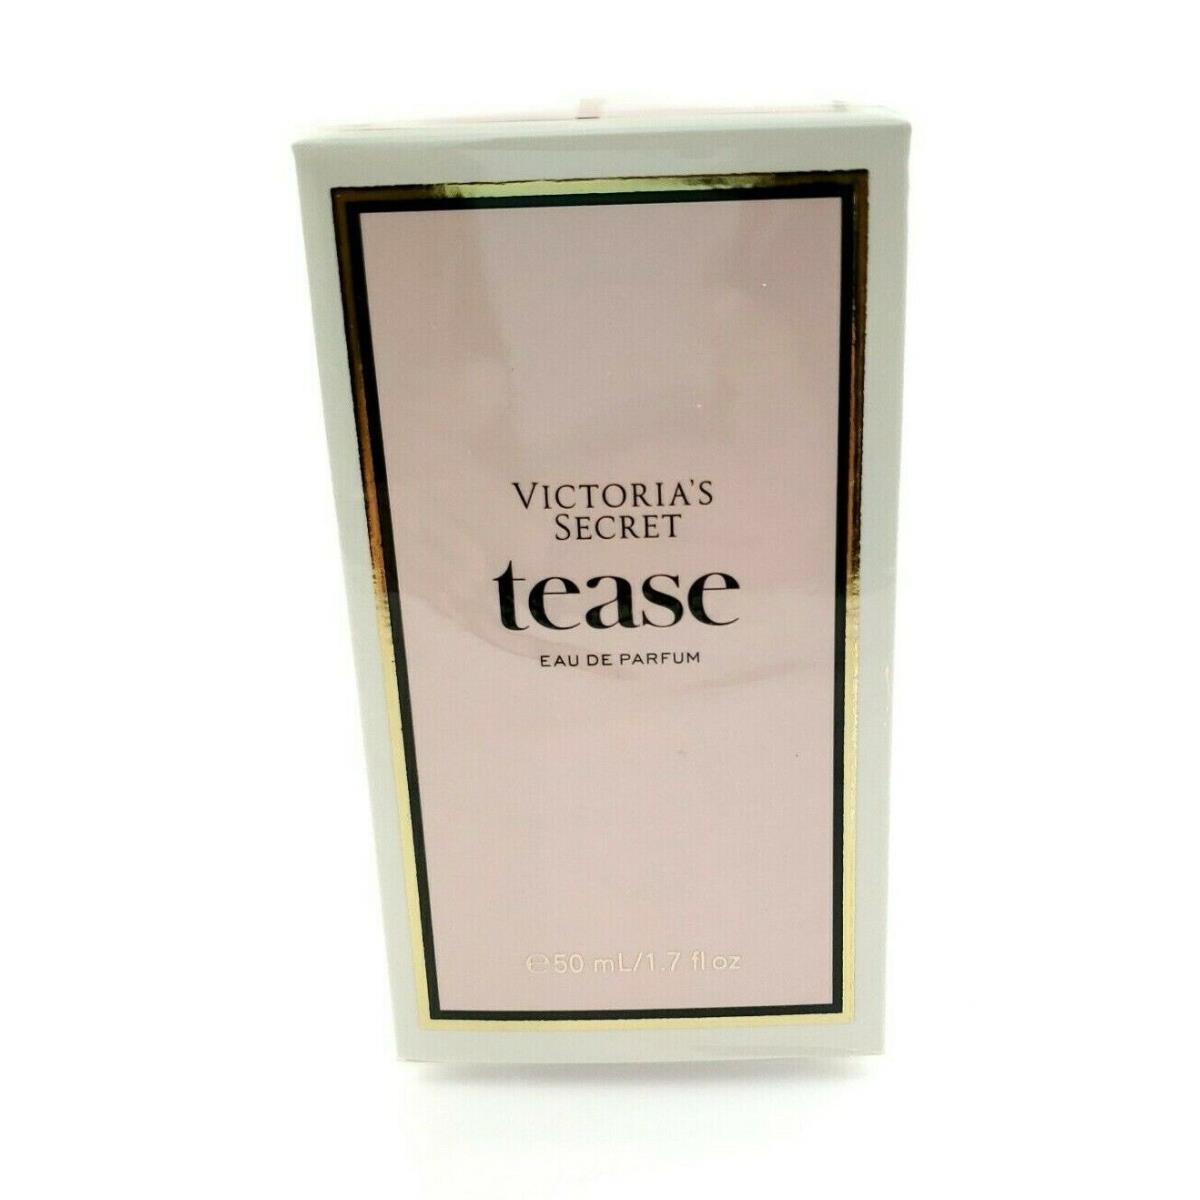 Victoria Secret Tease Eau De Perfume 1.7 fl oz Spray Bottle Boxed - 